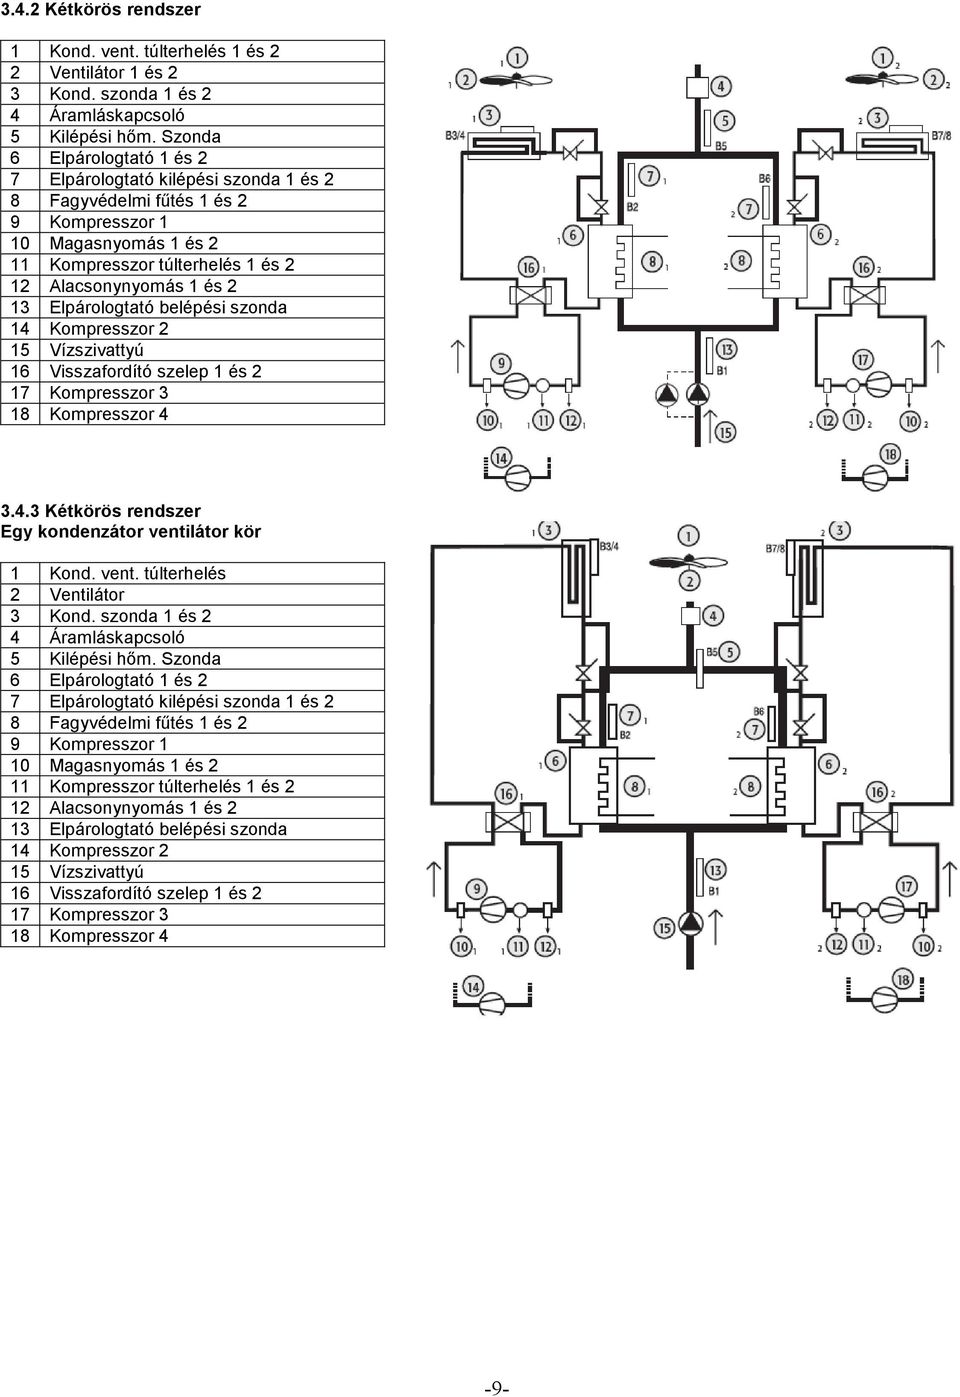 Elpárologtató belépési szonda 14 Kompresszor 2 15 Vízszivattyú 16 Visszafordító szelep 1 és 2 17 Kompresszor 3 18 Kompresszor 4 3.4.3 Kétkörös rendszer Egy kondenzátor venti